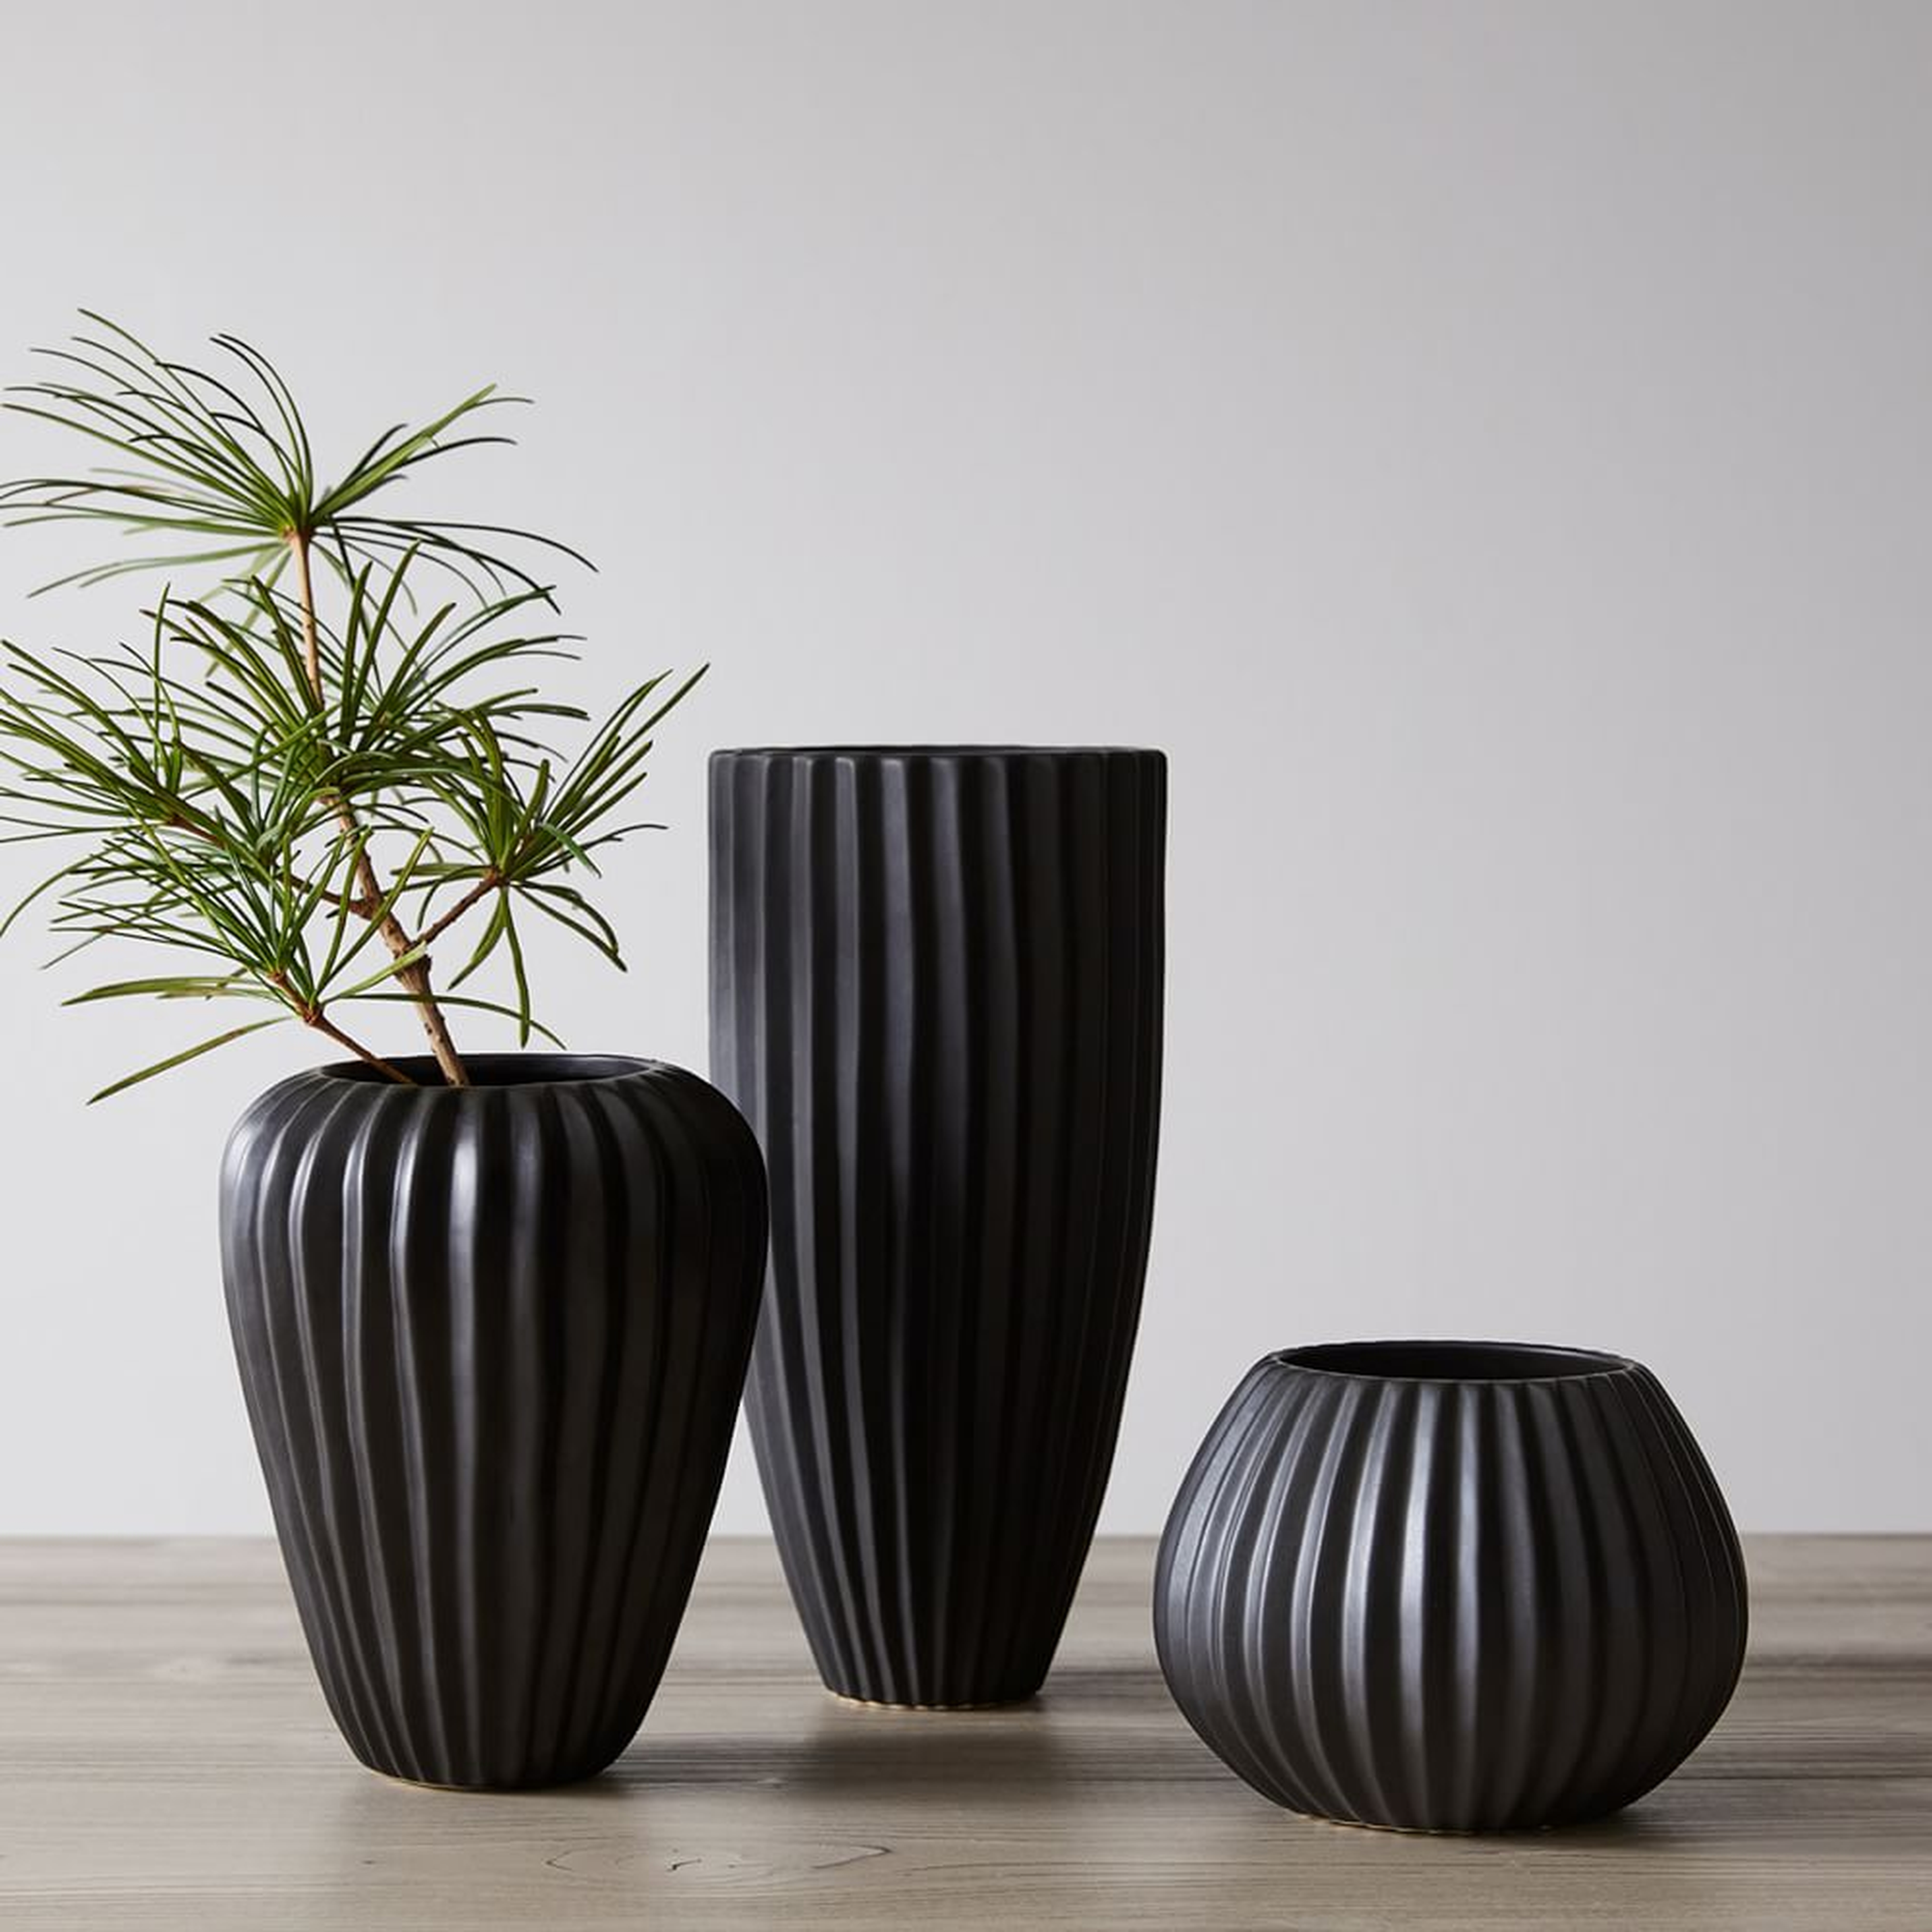 Sanibel Textured Black, Small Vase, Wide Tall Vase, Wide Tapered Vase, Set of 3 - West Elm